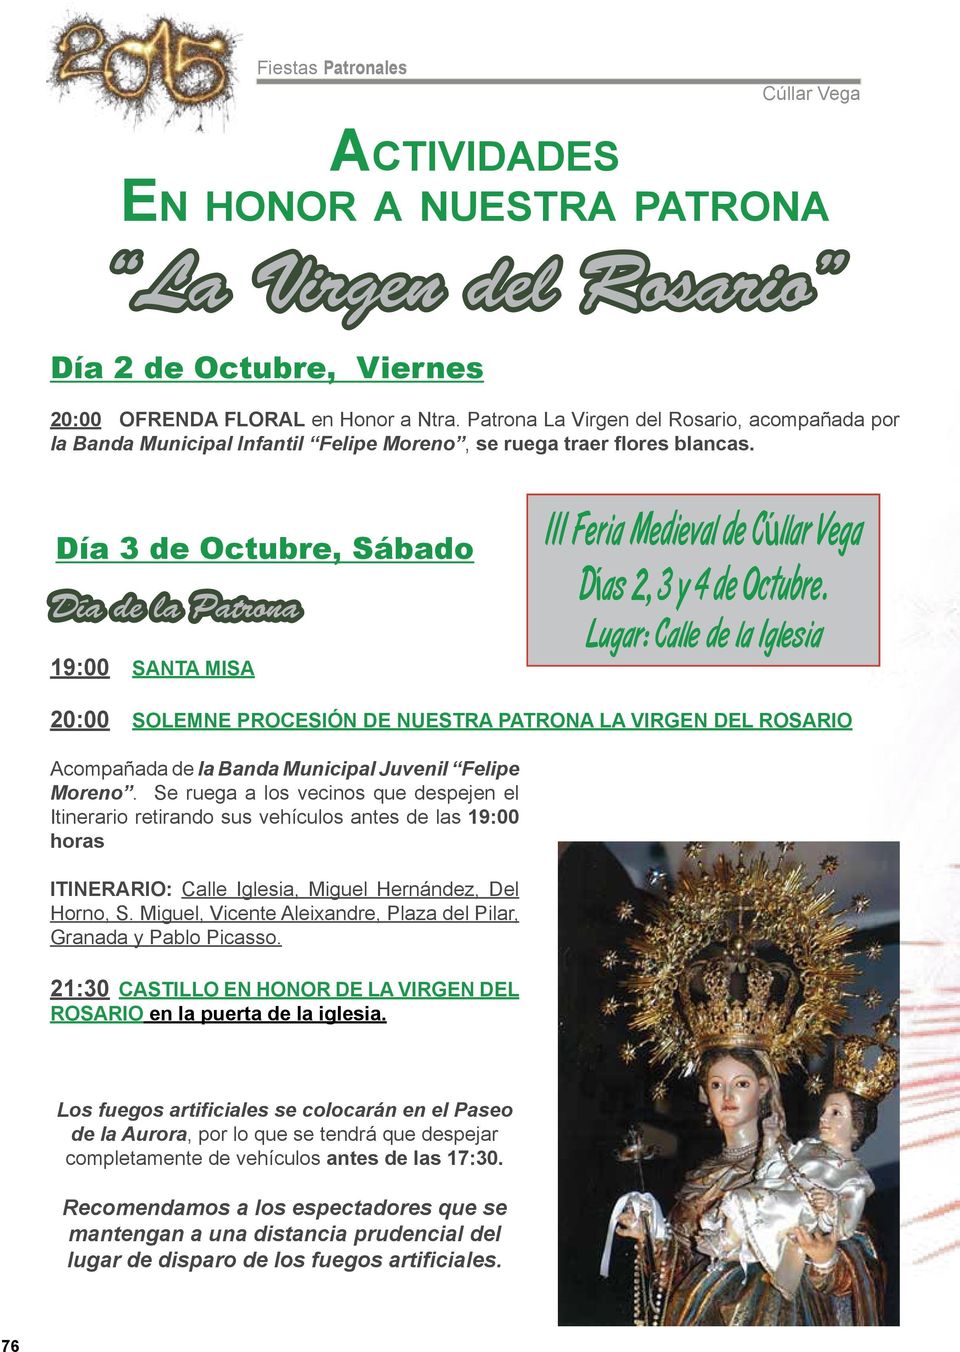 Día 3 de Octubre, Sábado Día de la Patrona 19:00 SANTA MISA III Feria Medieval de Días 2, 3 y 4 de Octubre.